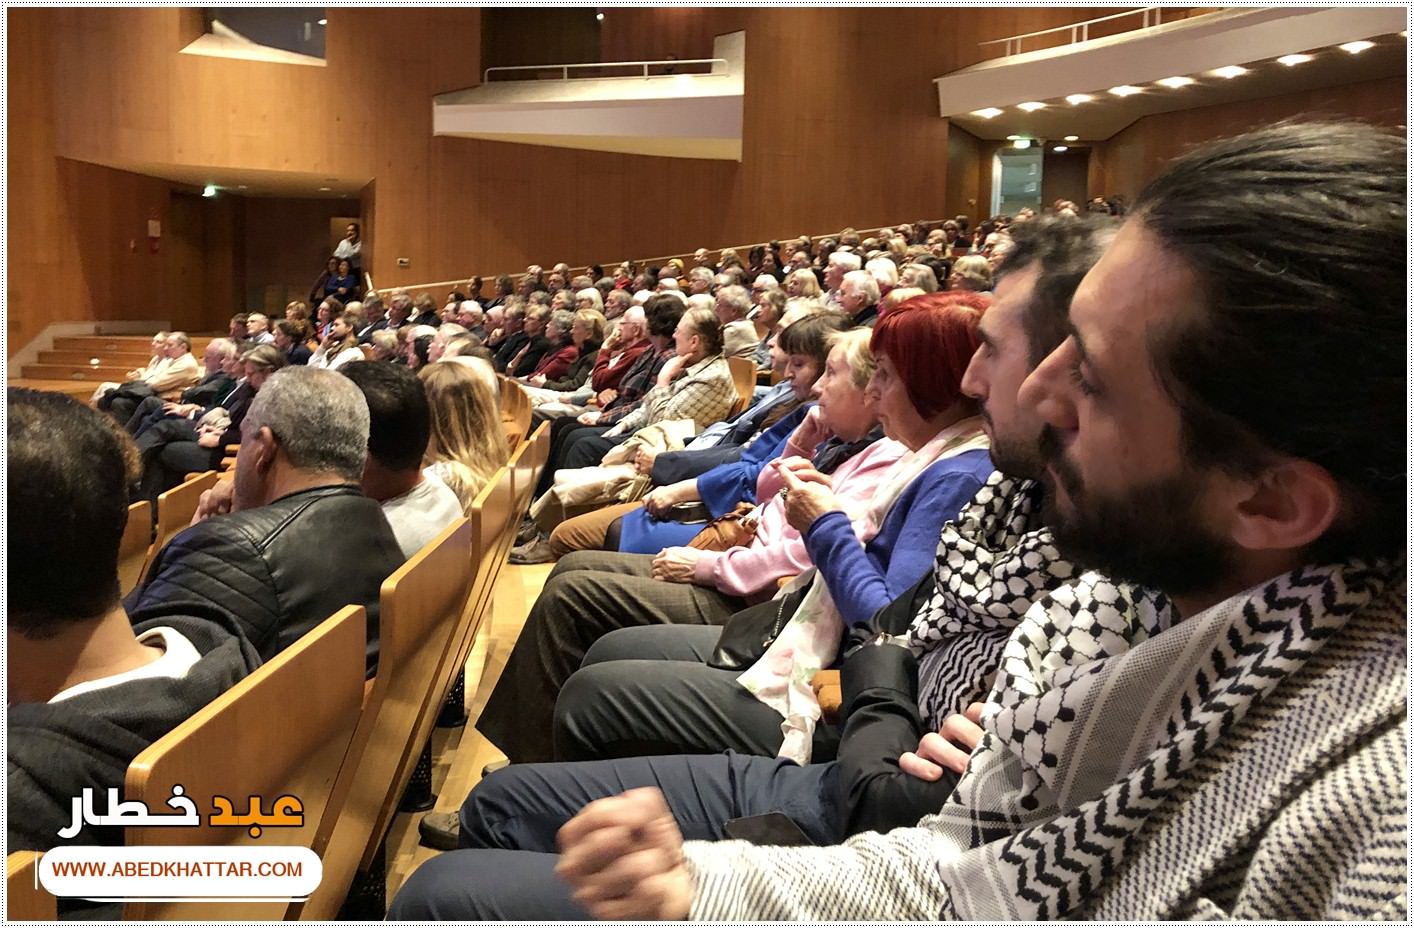  فرقة دارنا للتراث  الفلسطيني | المانيا تشارك في افتتاح معرض حكايات المسافر - ألف ليلة وليلة بين الشرق وأوروبا